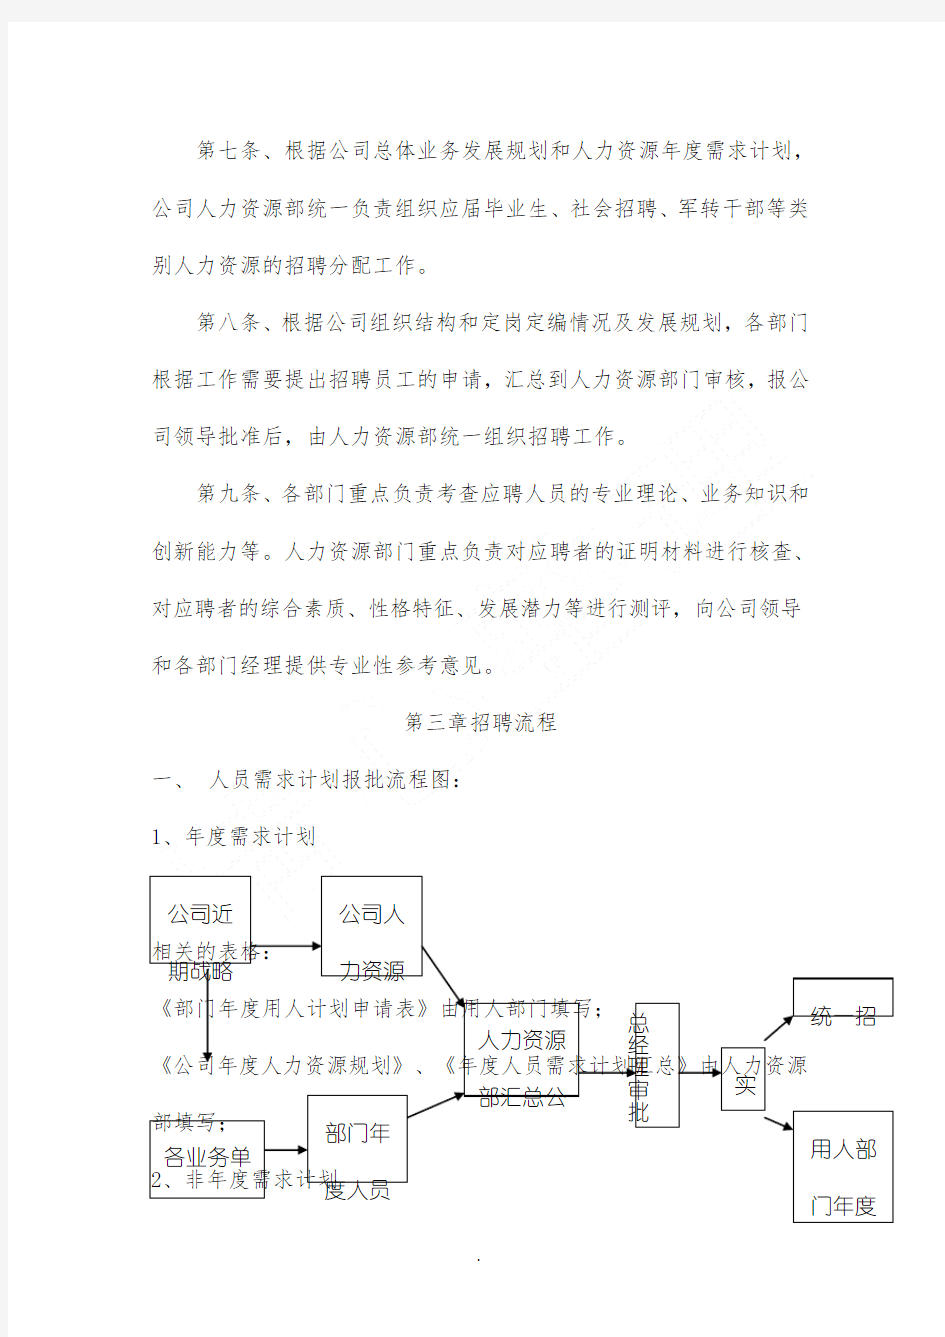 XX工业(天津)有限公司招聘管理办法